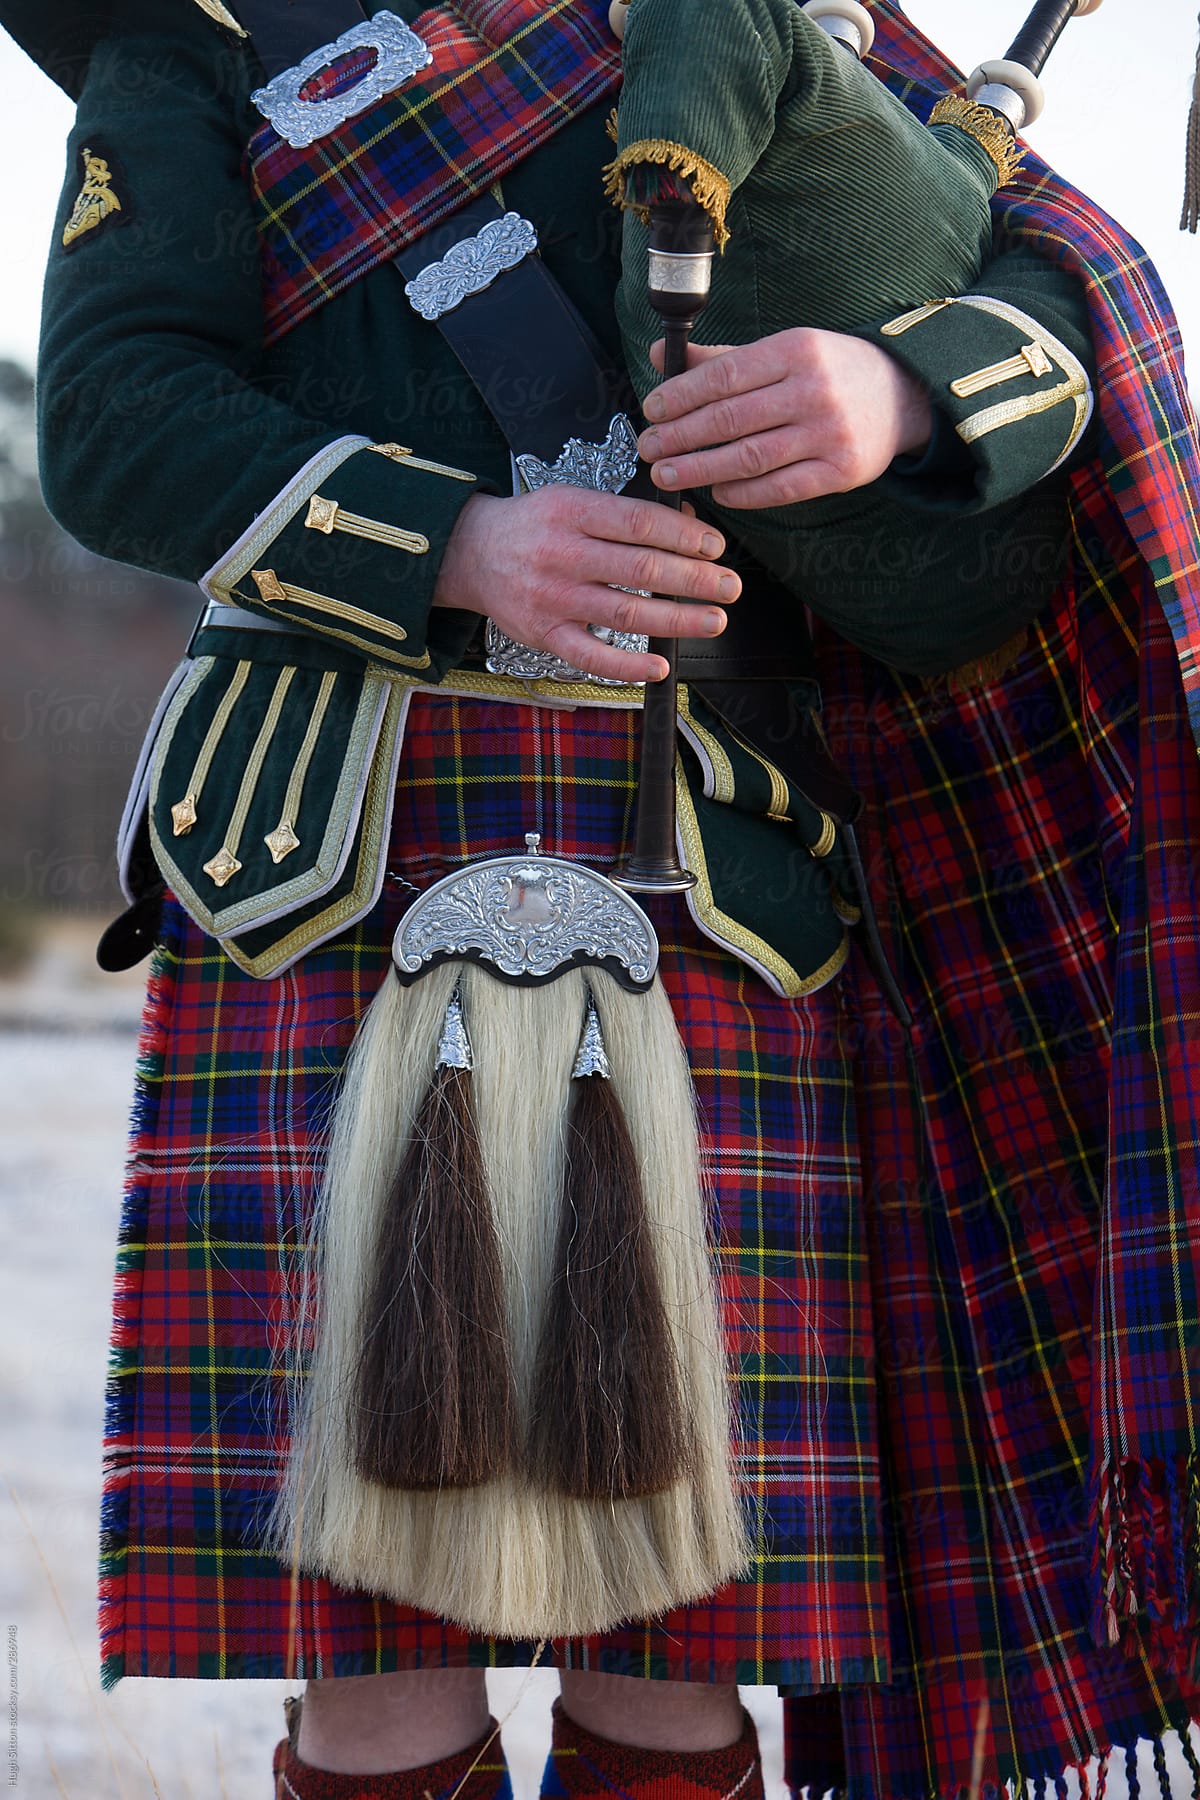 Close-up of Scottish Bagpiper.